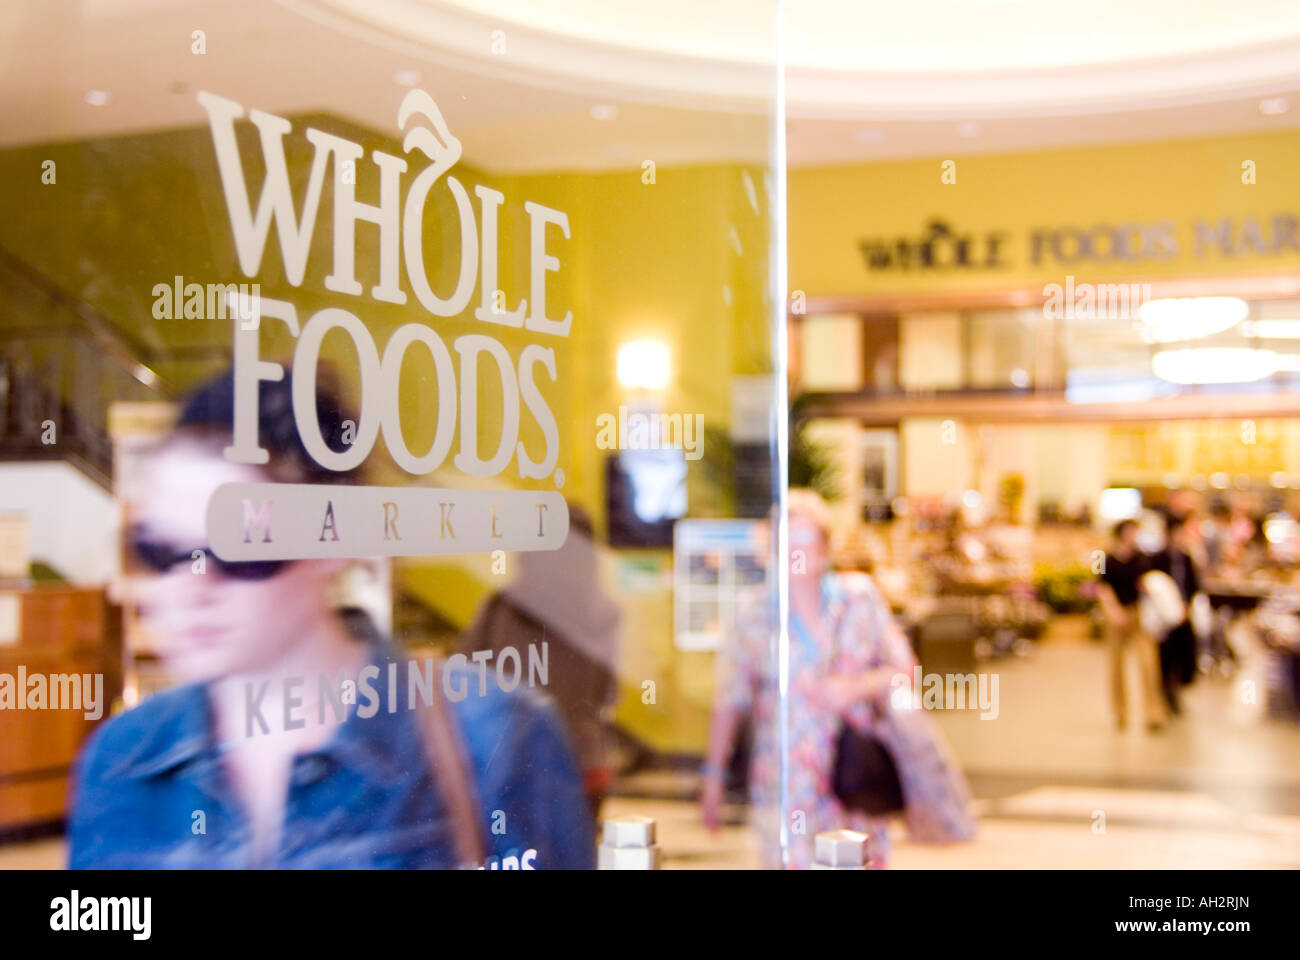 Whole Foods Market store, London, England, UK Stock Photo